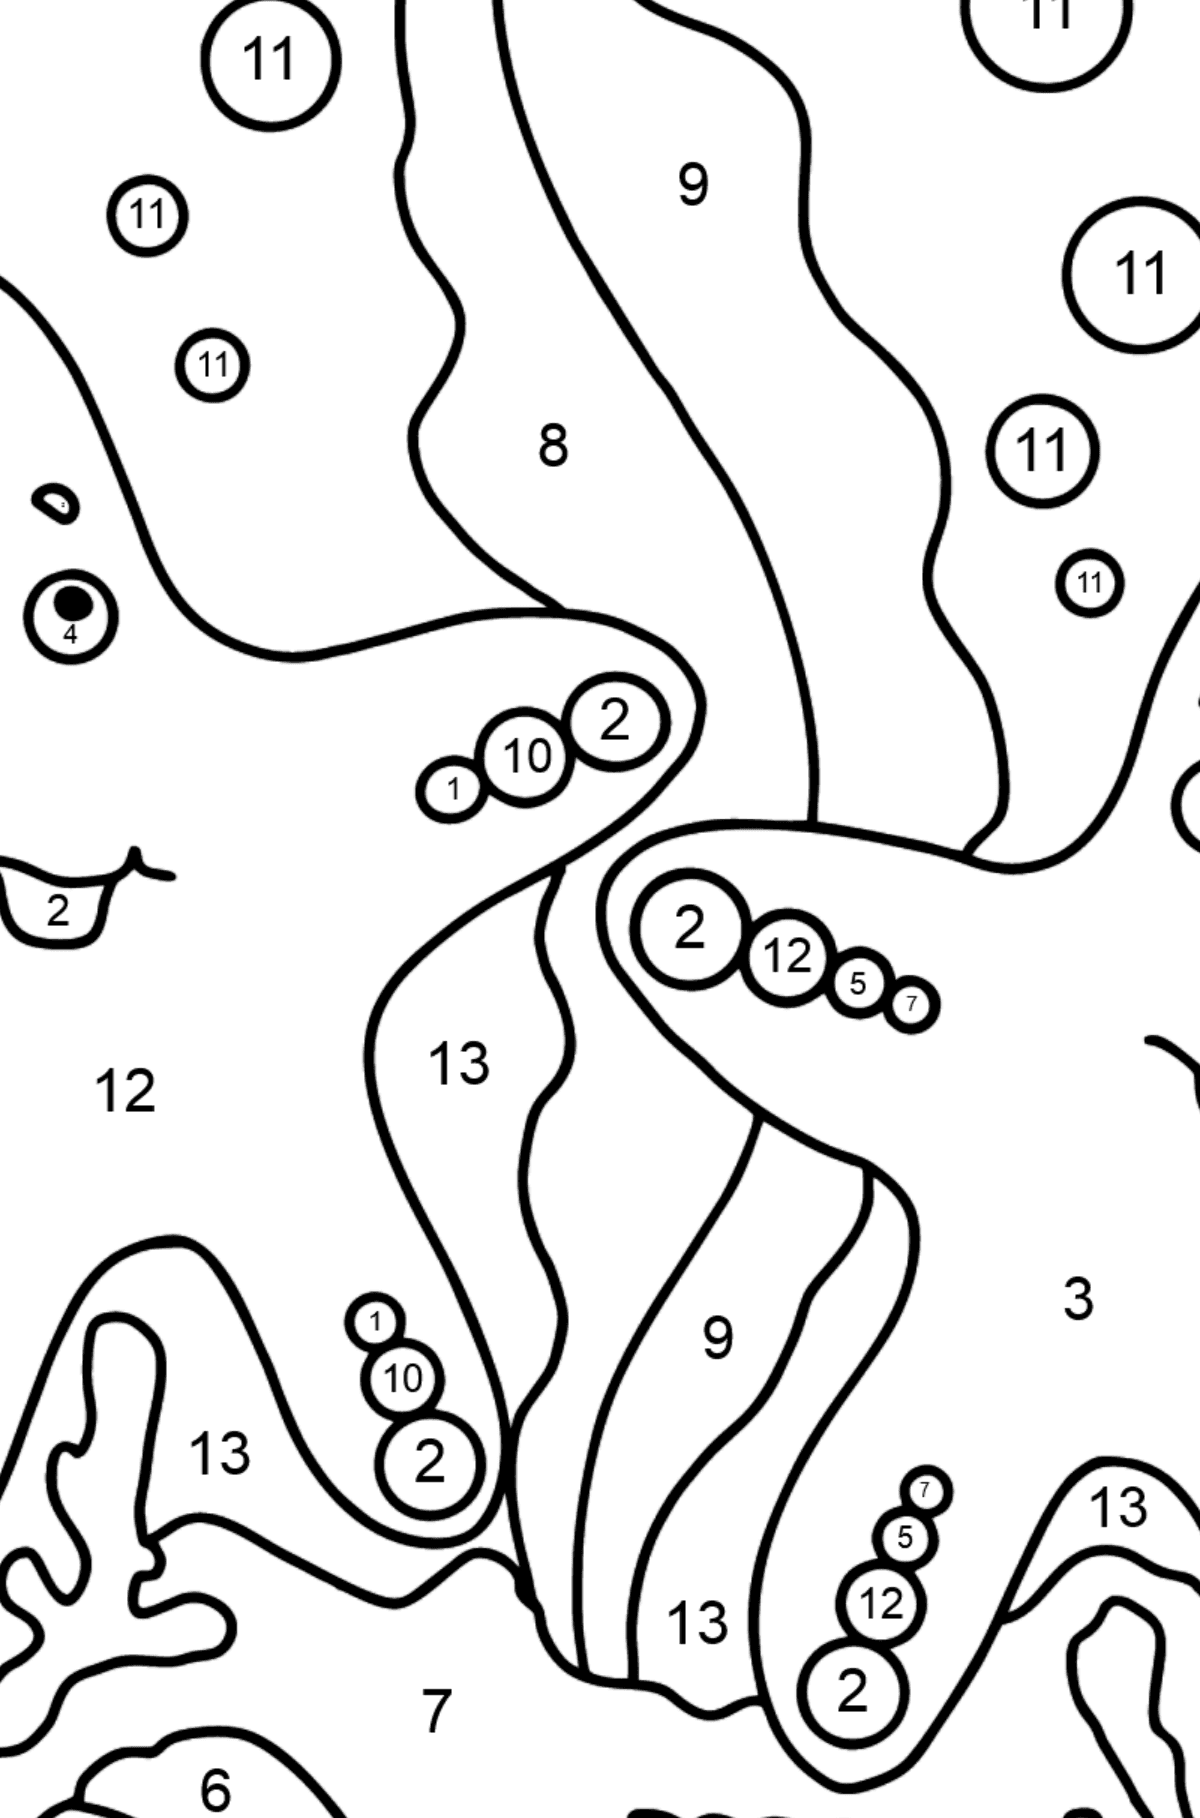 Dibujo para colorear Dos estrellas de mar (difícil) - Colorear por Números para Niños